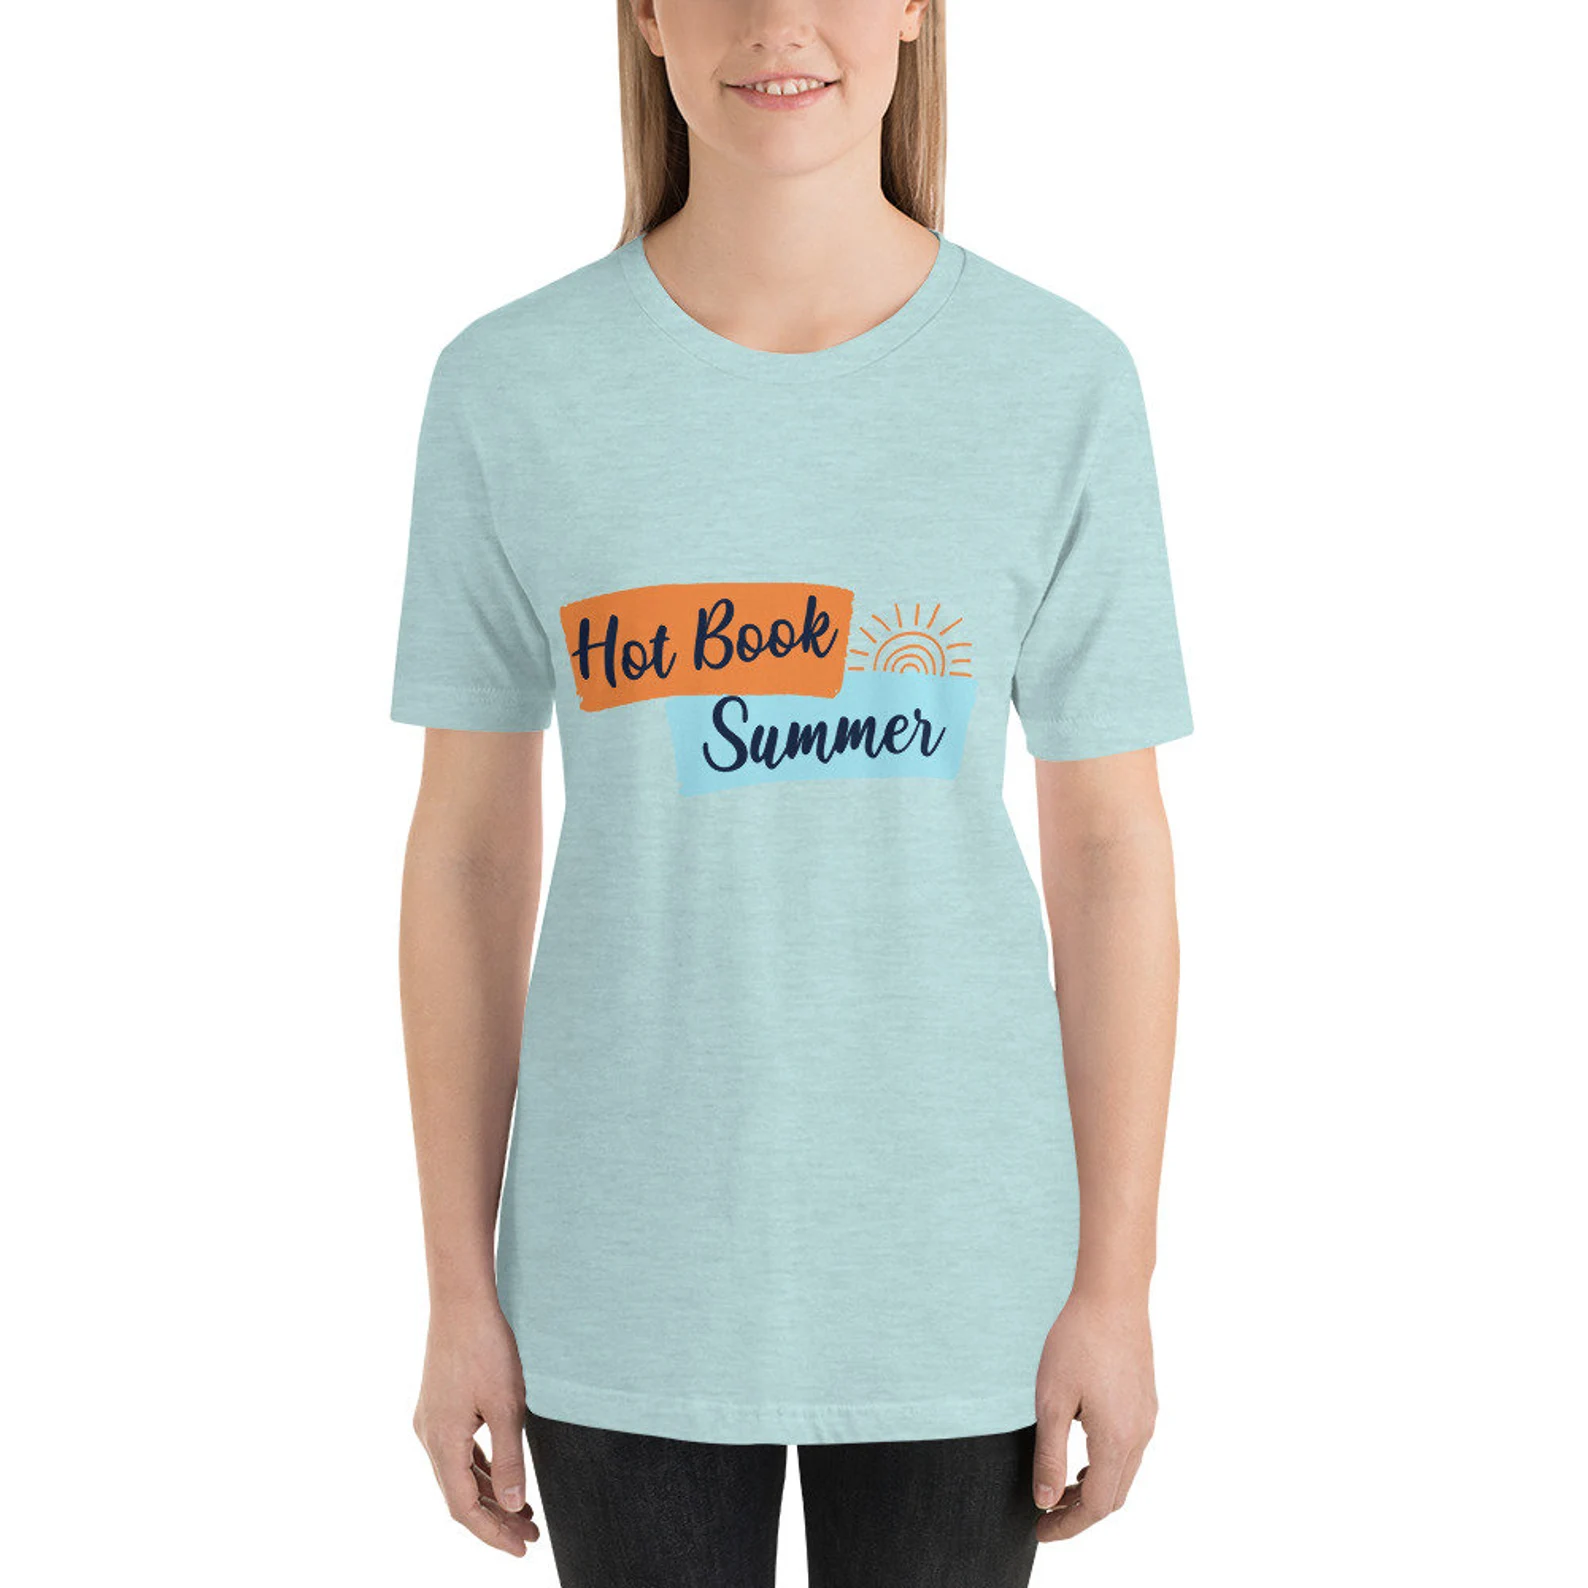 A pale blue green T-shirt that reads "Hot book summer"